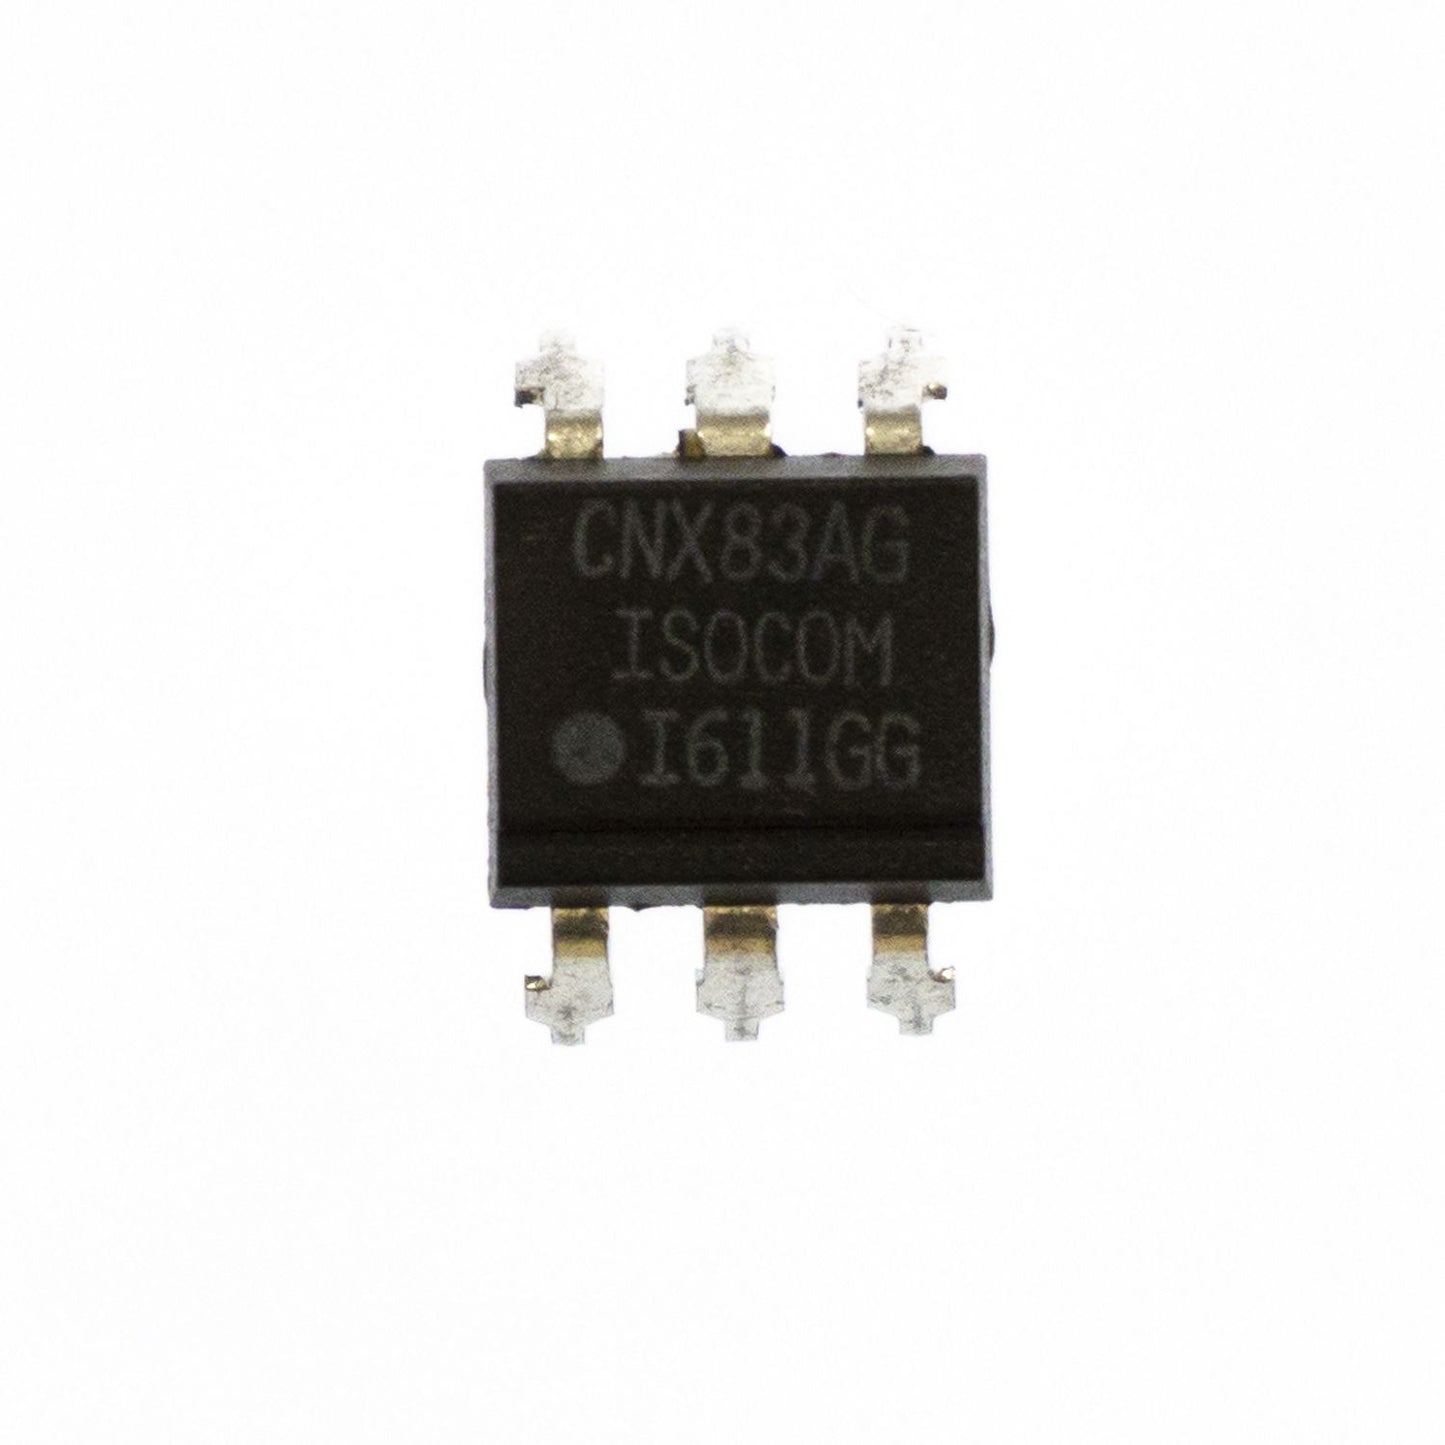 CNX83A componente elettronico, circuito integrato, transistor, 6 contatti